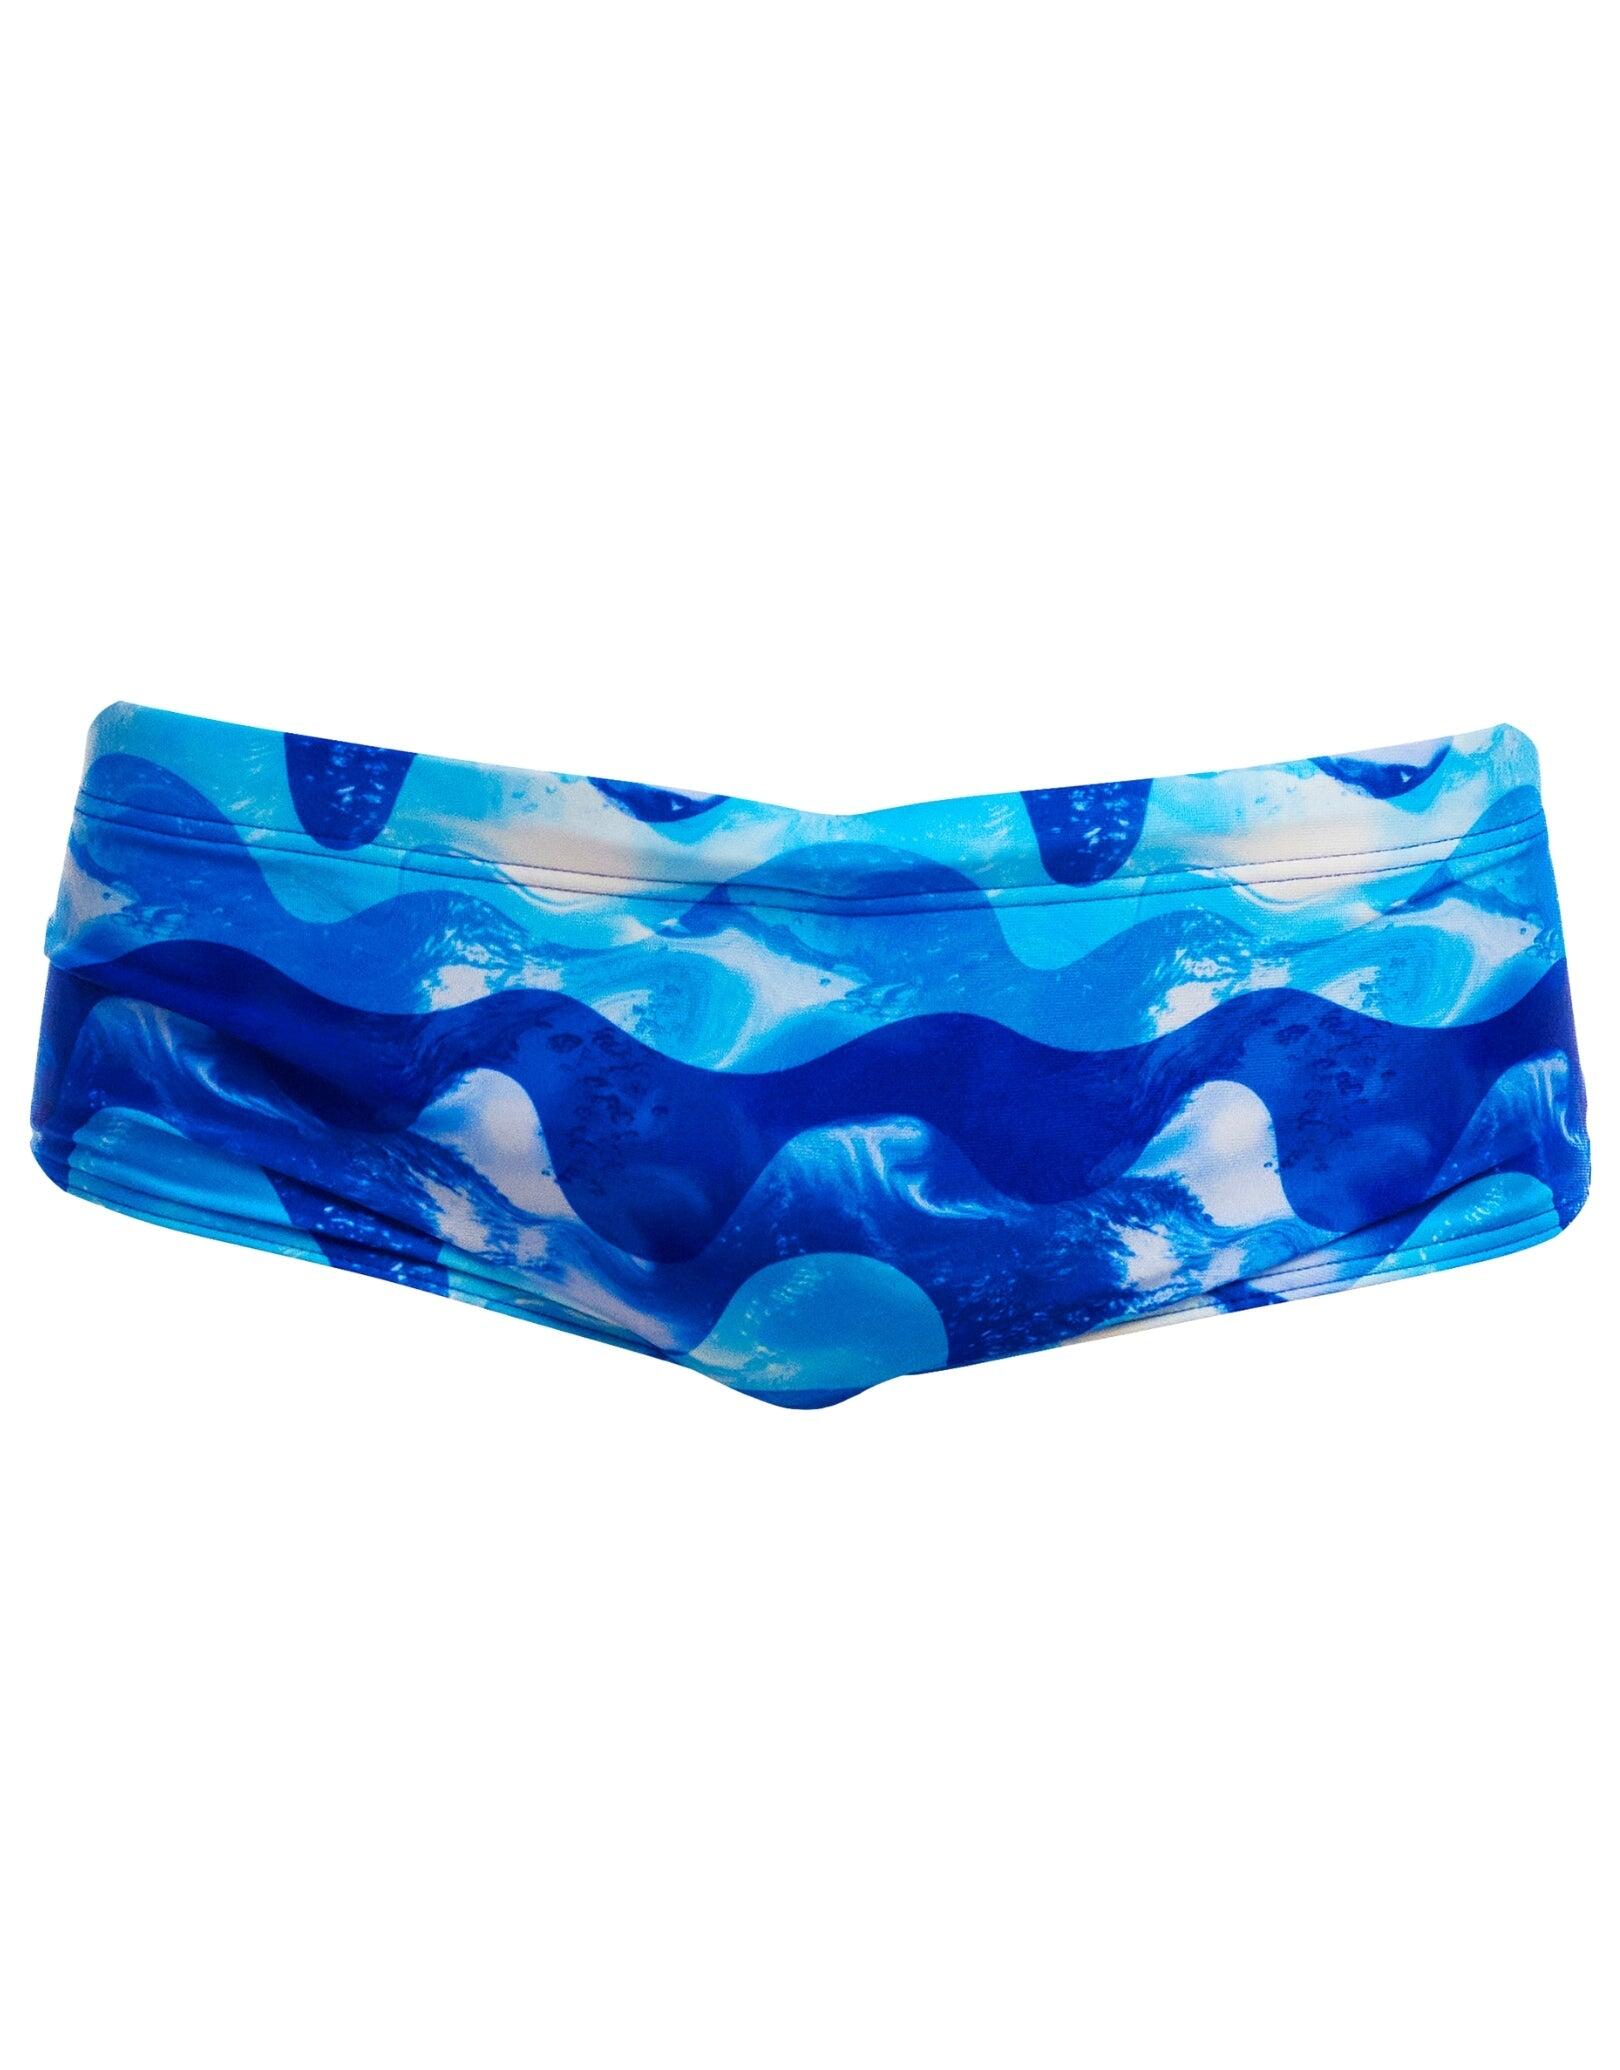 Funky Trunks Dive In Sidewinder Swim Trunks - Blue 3/5